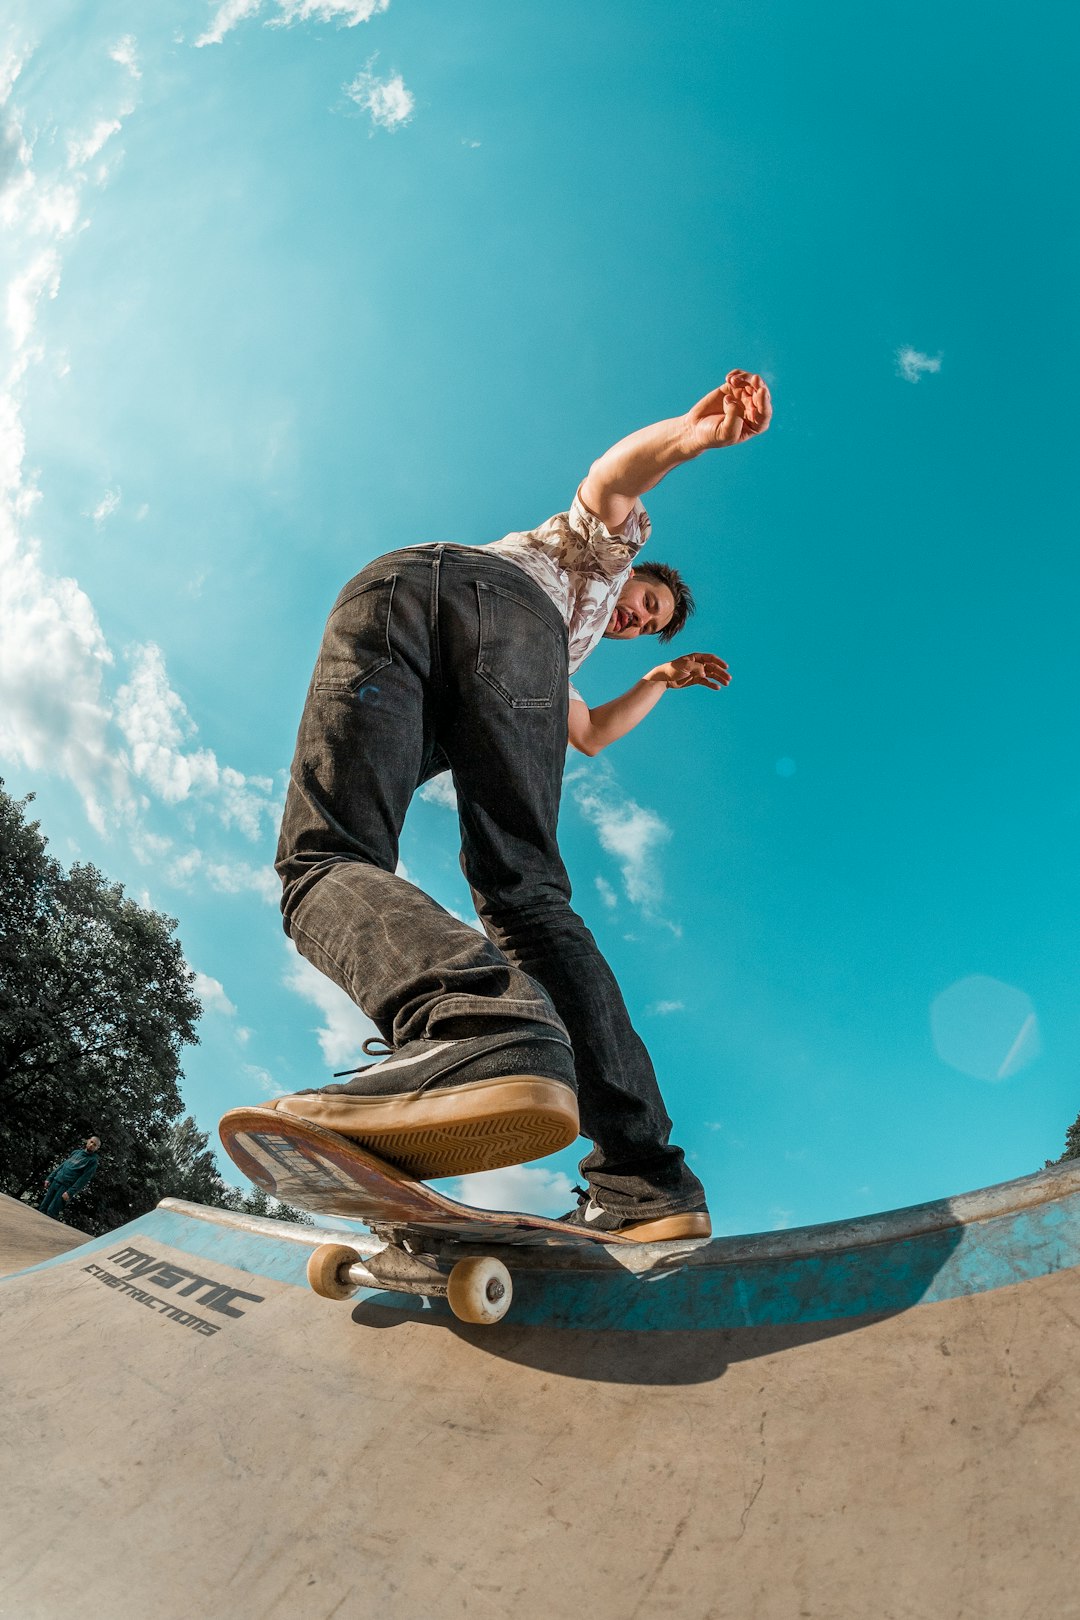 Rocknroll on skateboard
